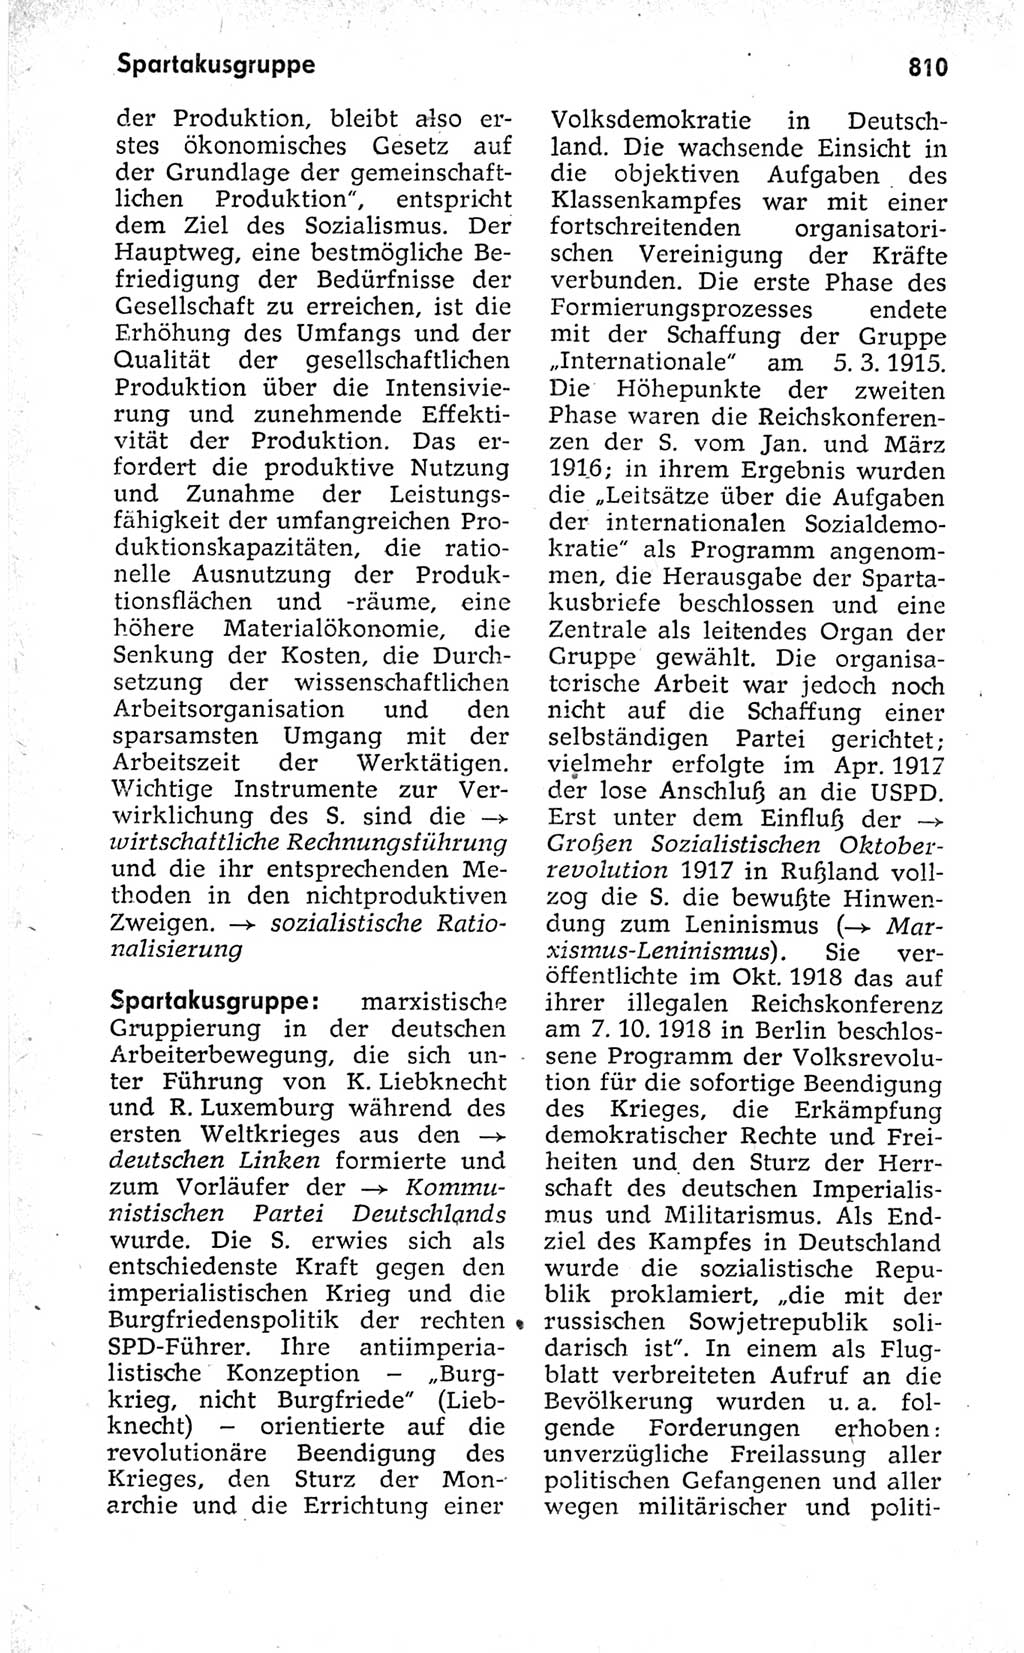 Kleines politisches Wörterbuch [Deutsche Demokratische Republik (DDR)] 1973, Seite 810 (Kl. pol. Wb. DDR 1973, S. 810)